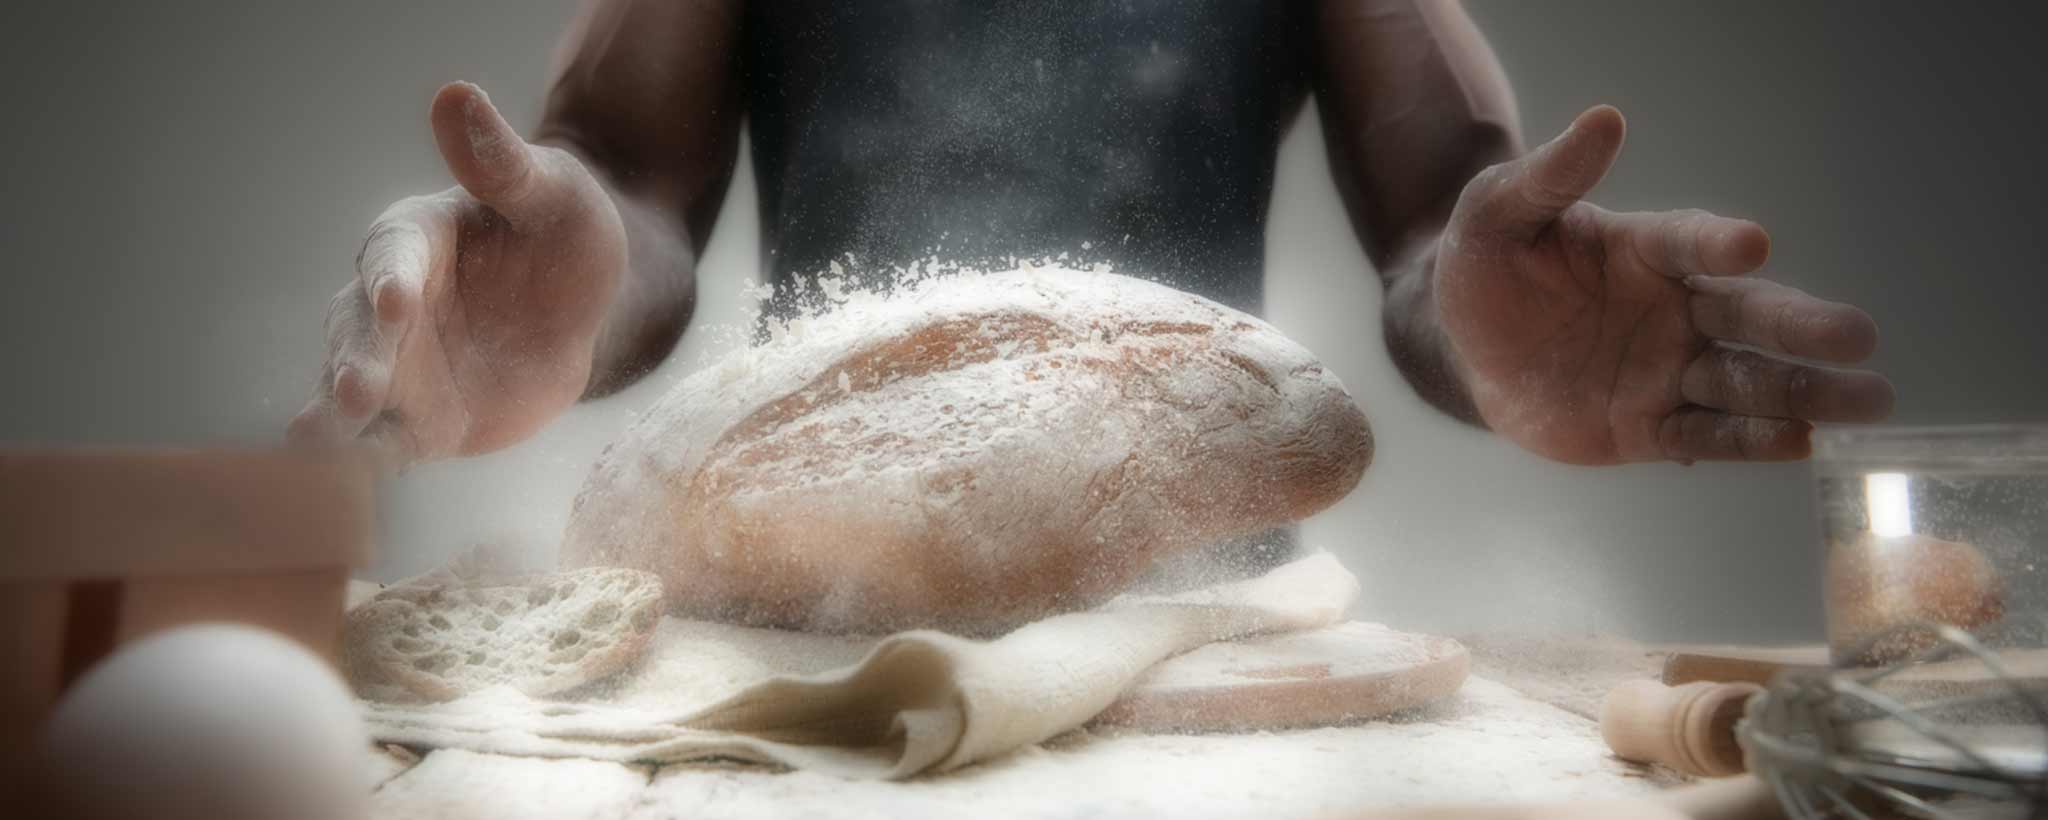 'Black baker tosses bread'